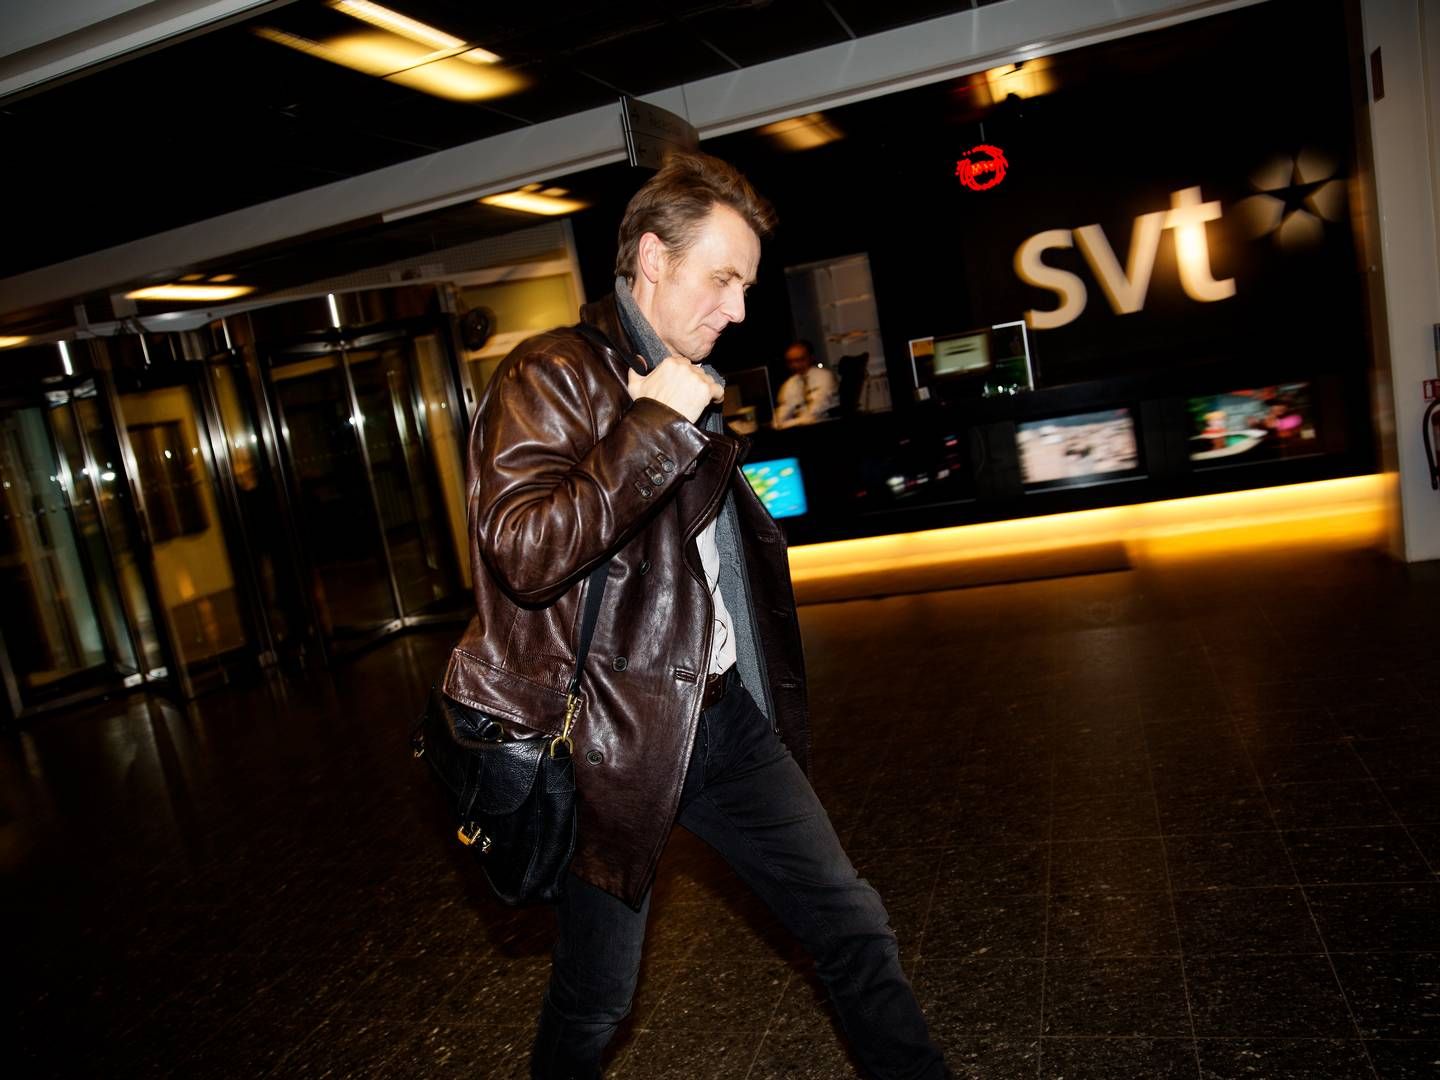 SVT skal spare 200 mio. svenske kr. Dette er et arkivbillede med værten på det populære norsk-svenske talkshow "Sakvlan", der blev filmet og produceret af SVT i flere sæsoner. | Photo: Jacob Ehrbahn